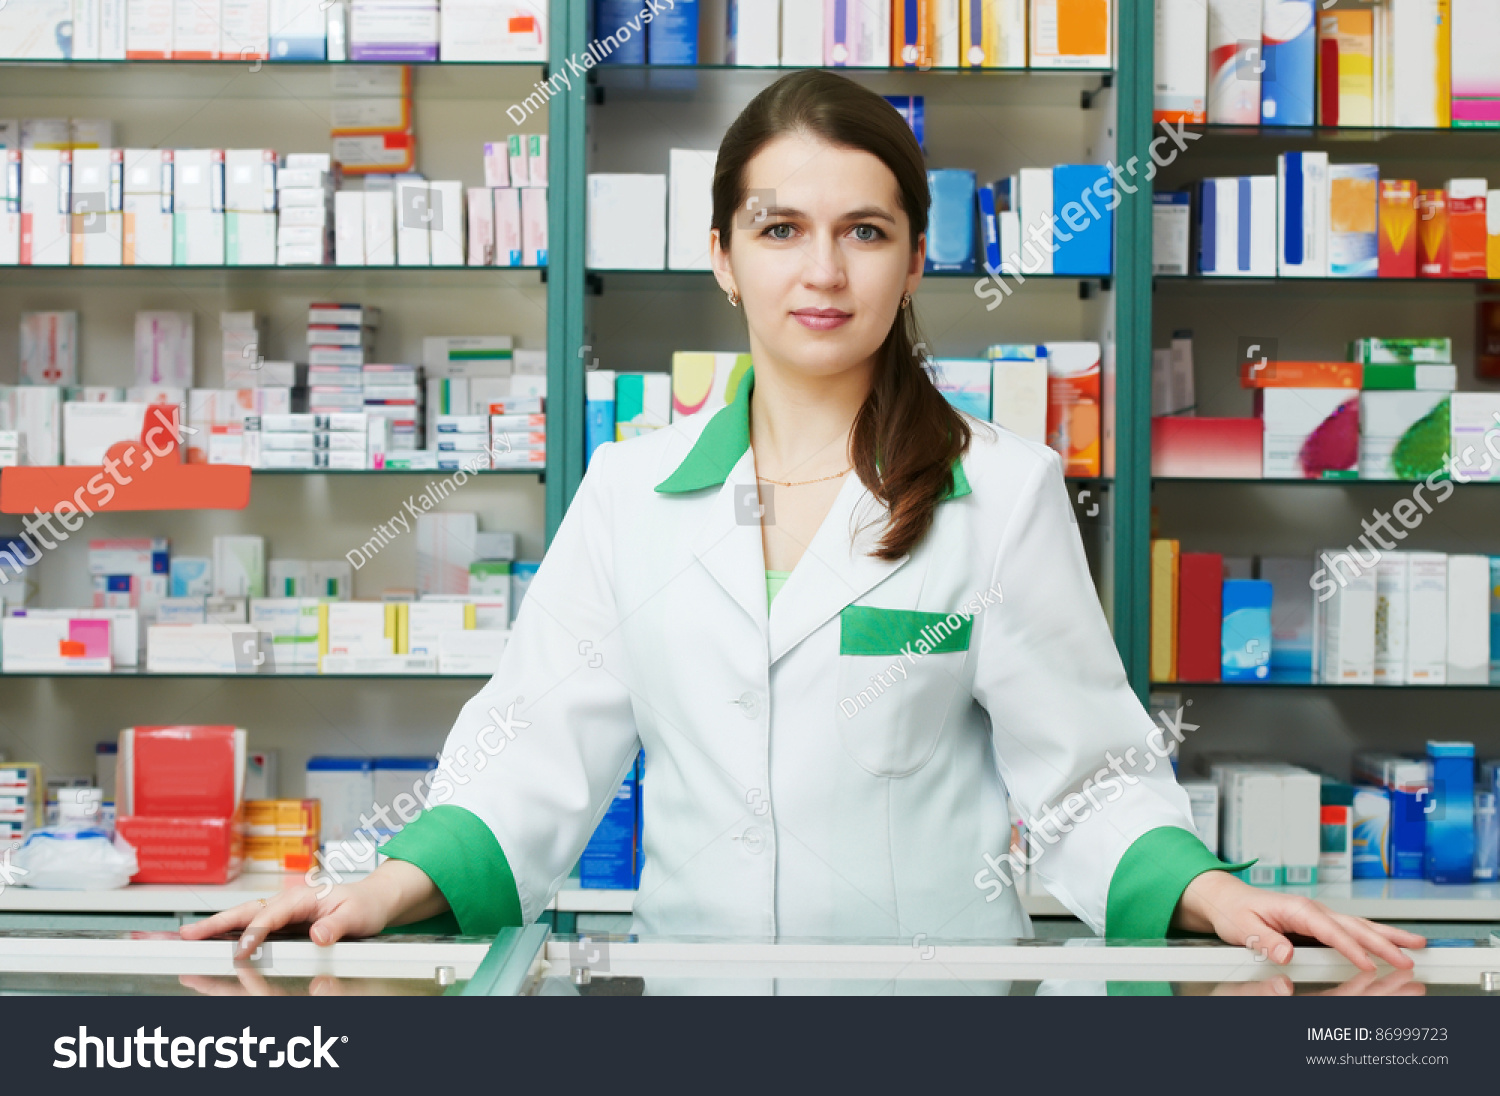 http://image.shutterstock.com/z/stock-photo-cheerful-pharmacist-chemist-woman-standing-in-pharmacy-drugstore-86999723.jpg